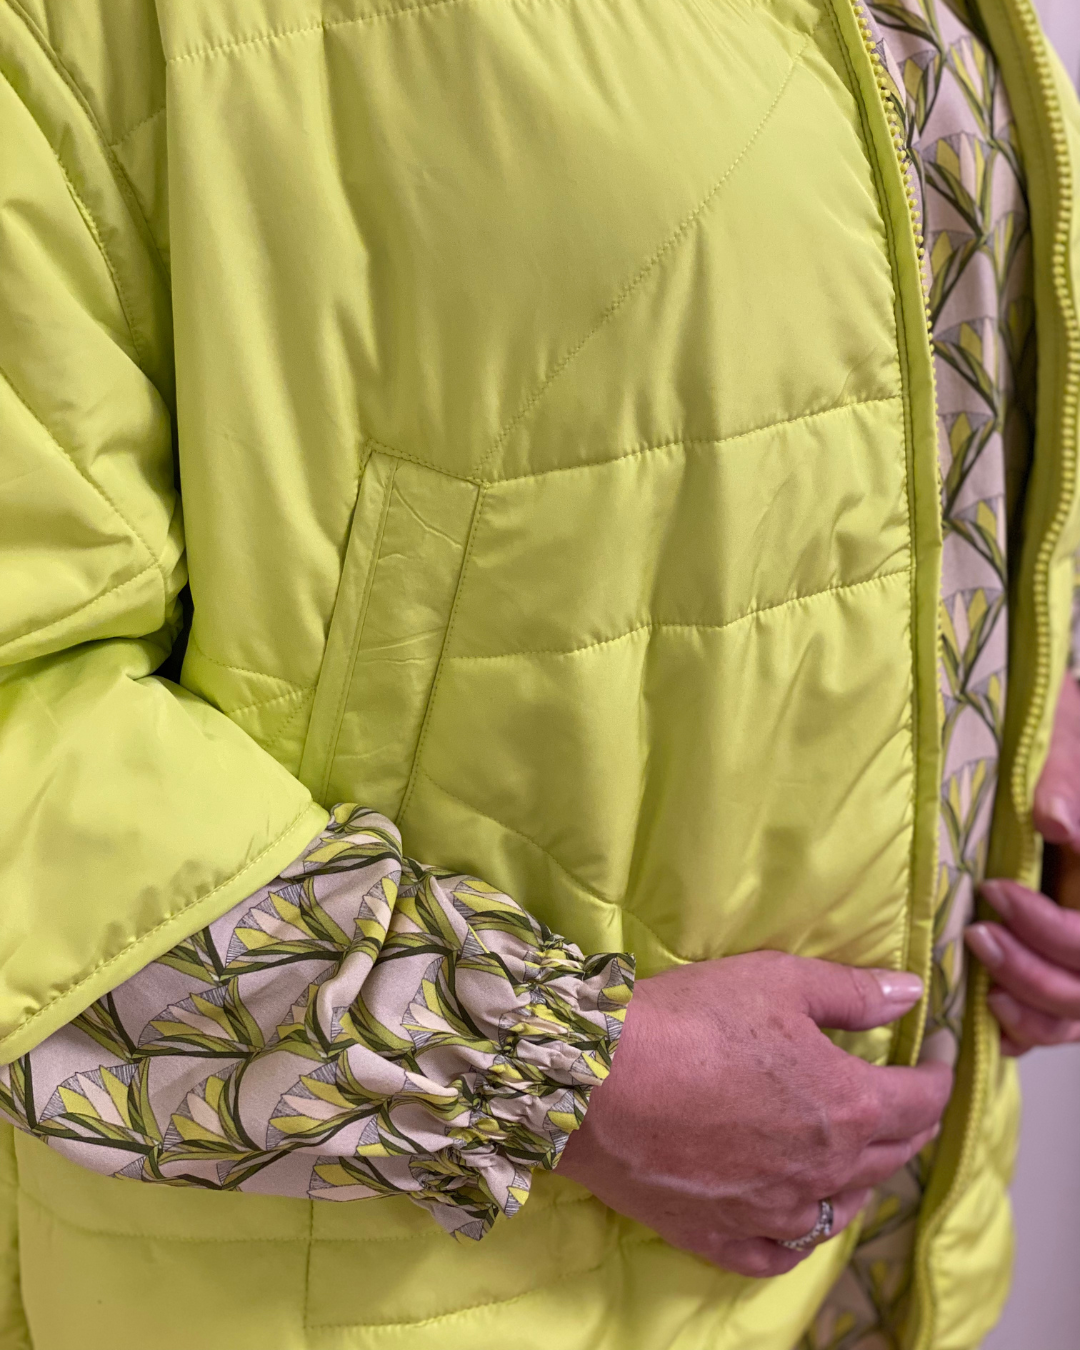 Gemusterte Viskose-Bluse in leichter A-Form mit femininen Details